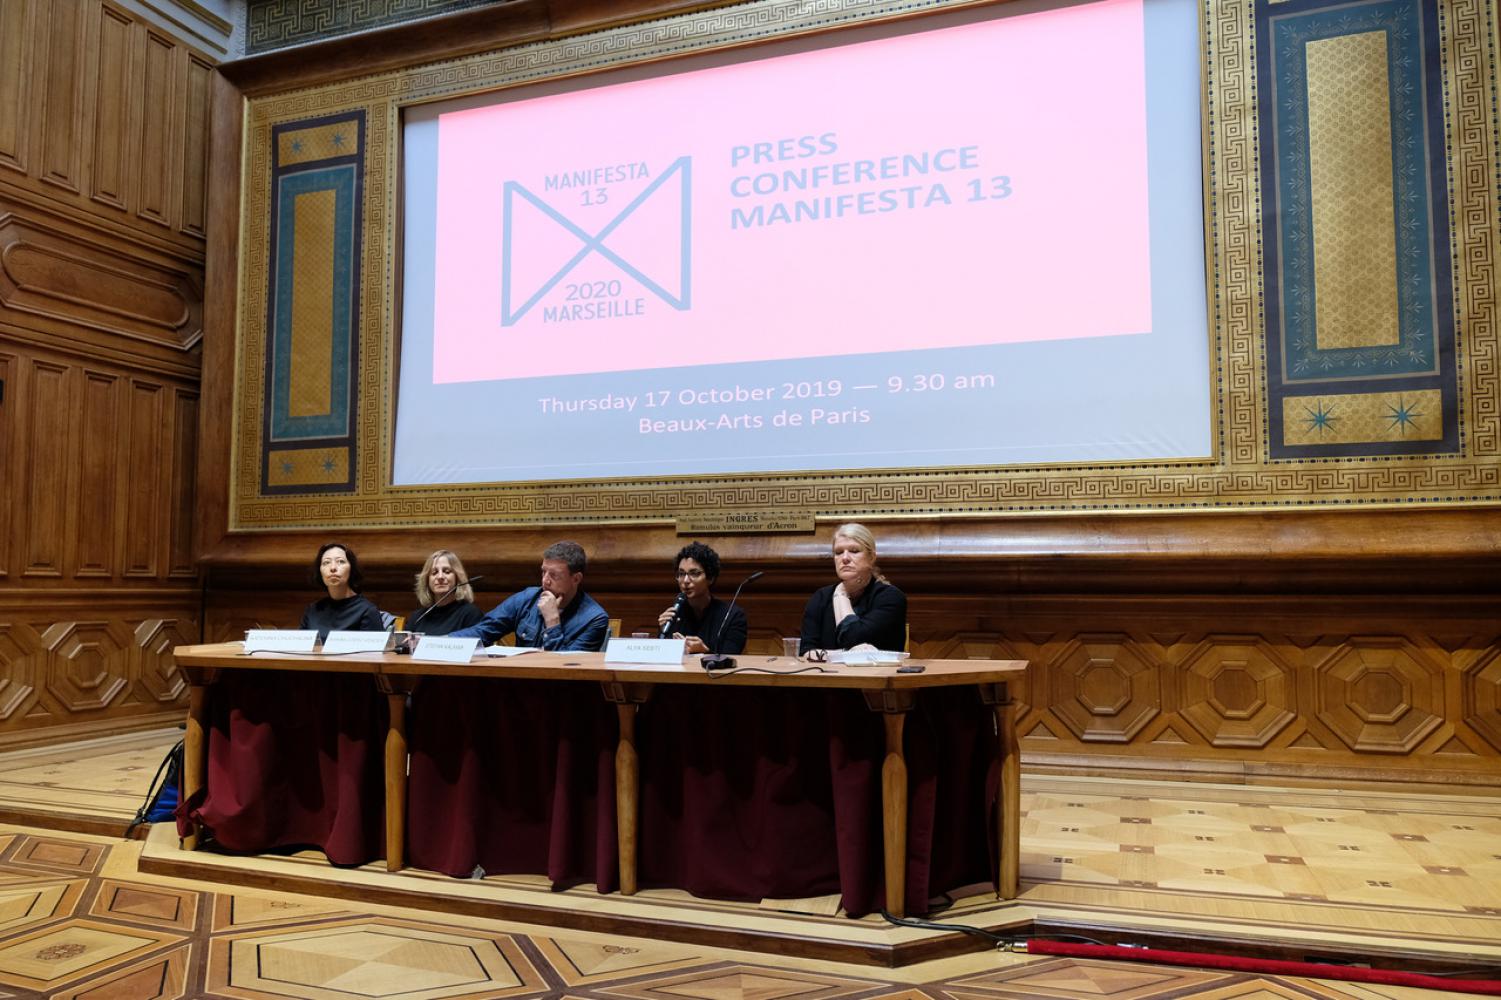 Die Pressekonferenz zur Manifesta 13 am 17. Oktober 2019 in der Ecole des Beaux Arts in Paris